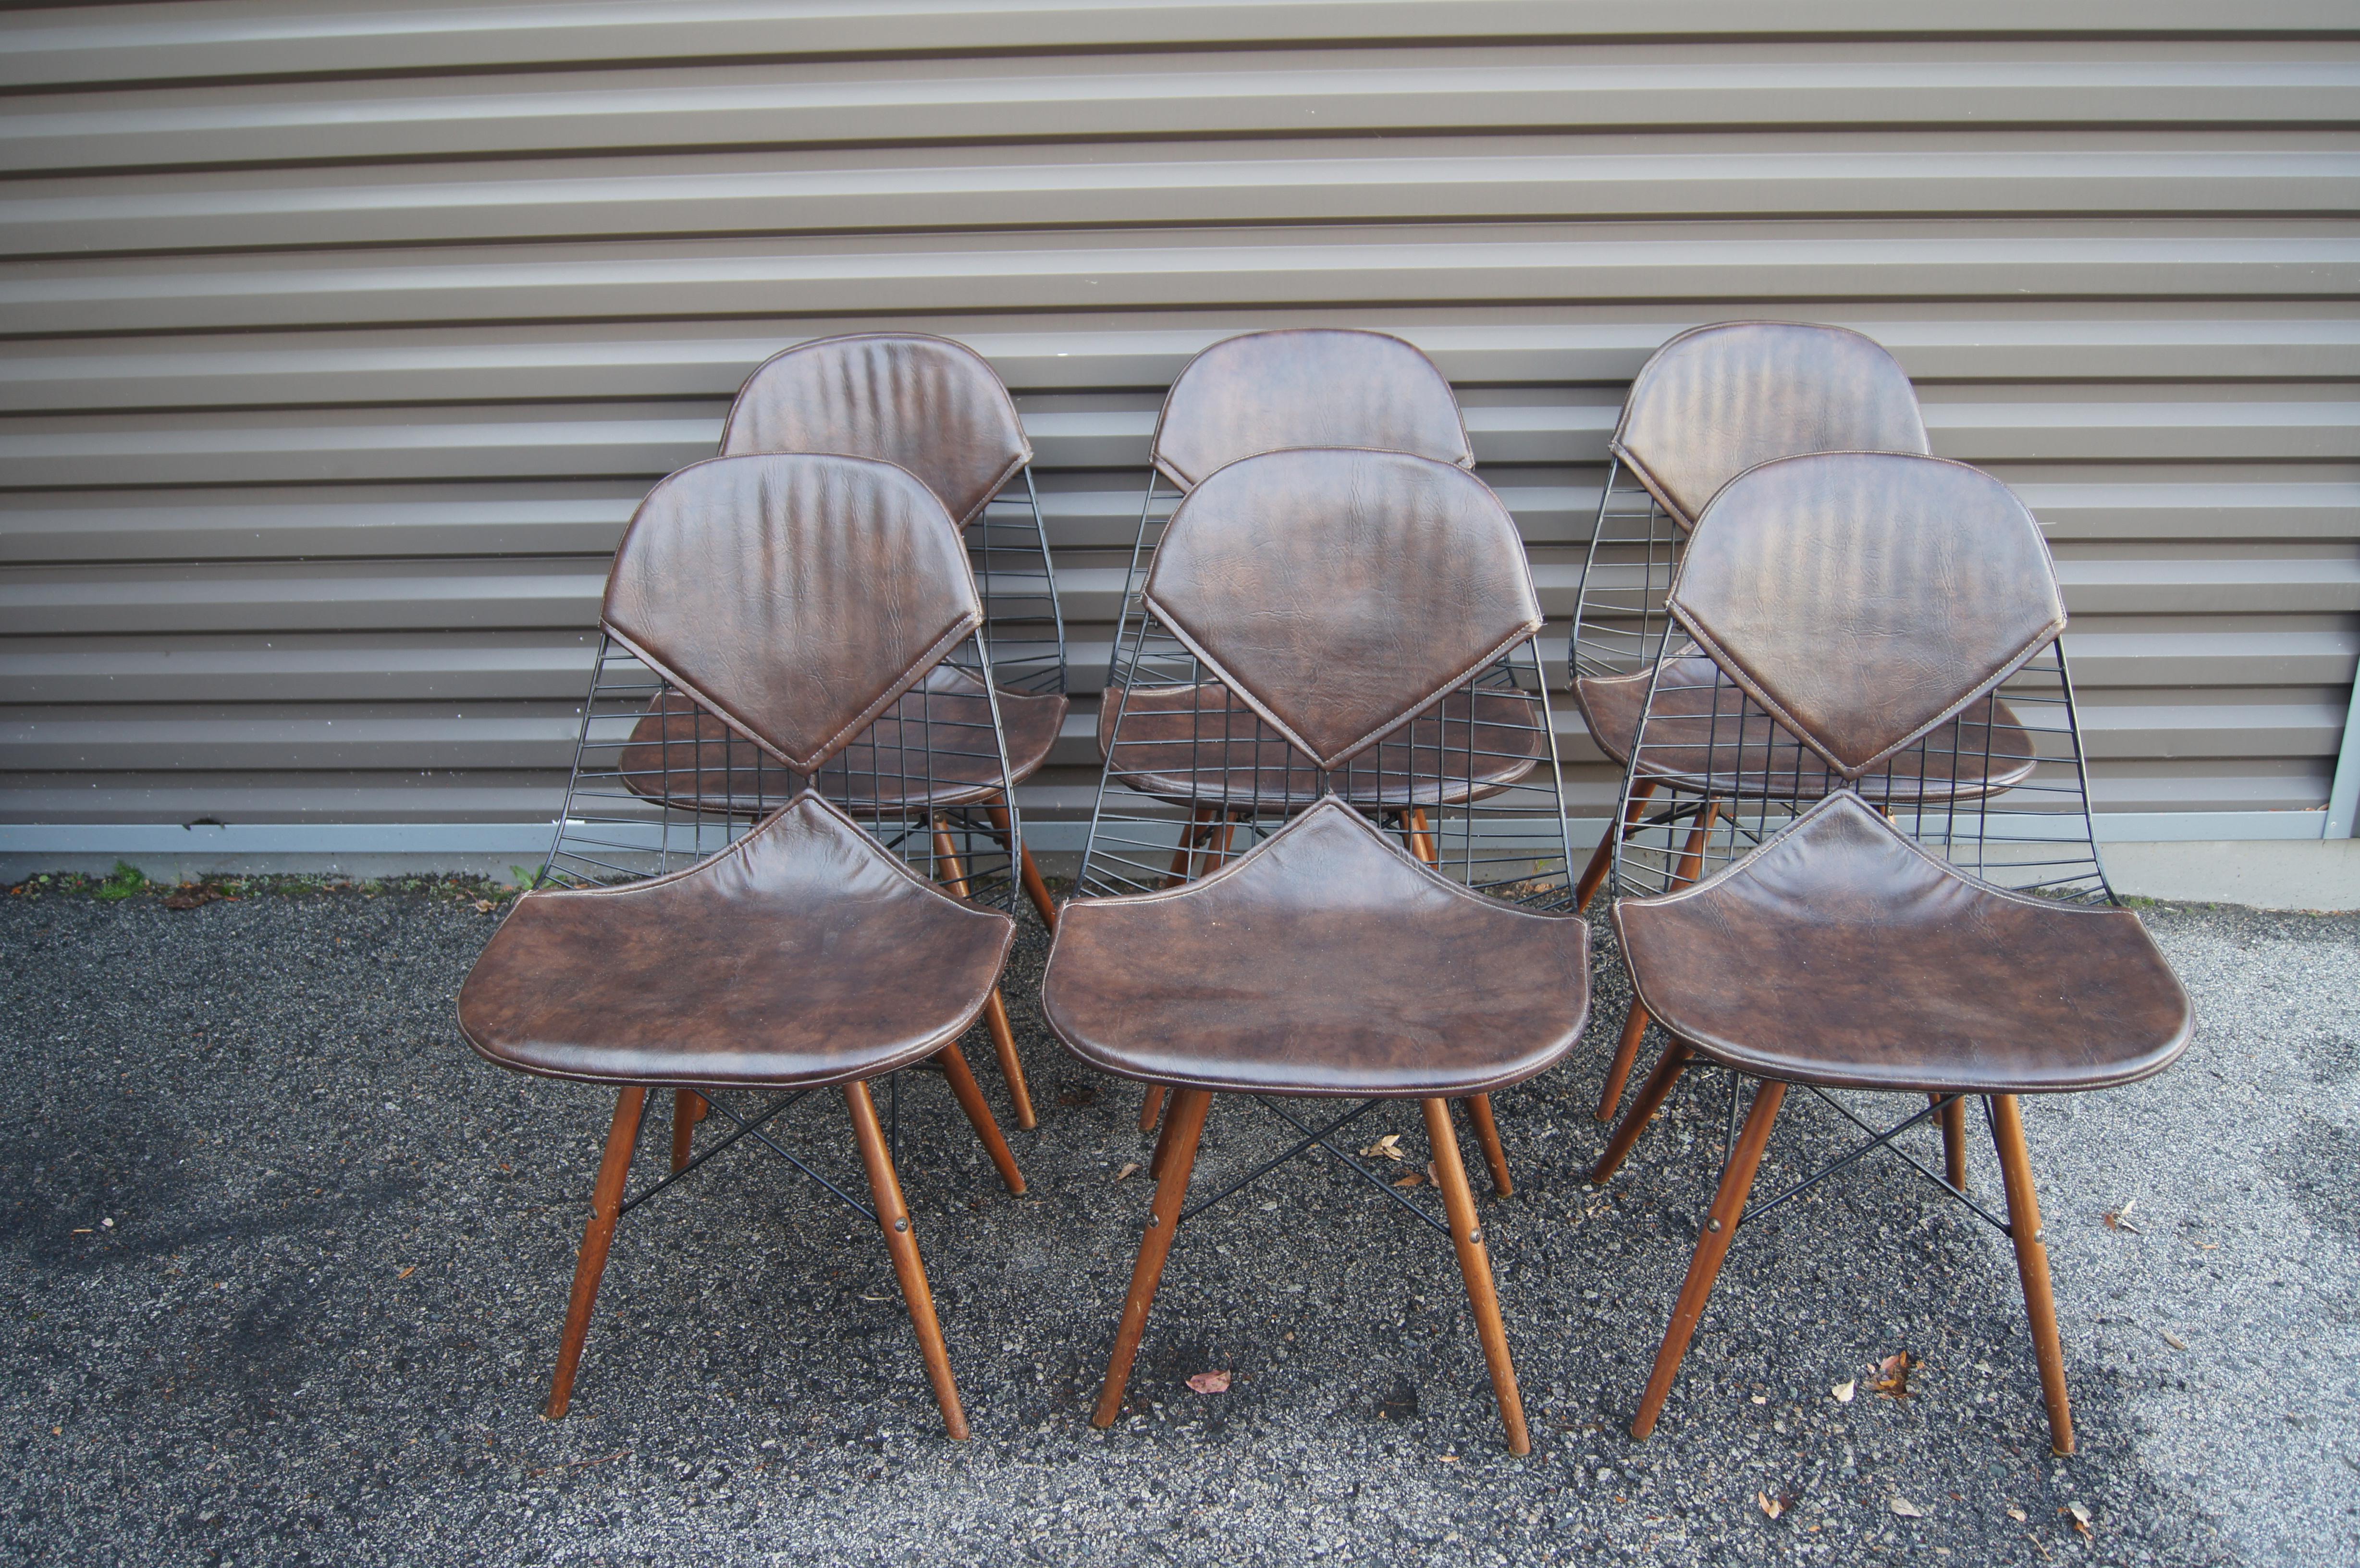 Charles und Ray Eames entwarfen 1951 ihre klassischen Draht-Esszimmerstühle für Herman Miller. Dieser frühe Satz von sechs Stühlen besteht aus schwarz pulverbeschichteten Drahtgestellen auf Holzdübelbeinen mit braunen 